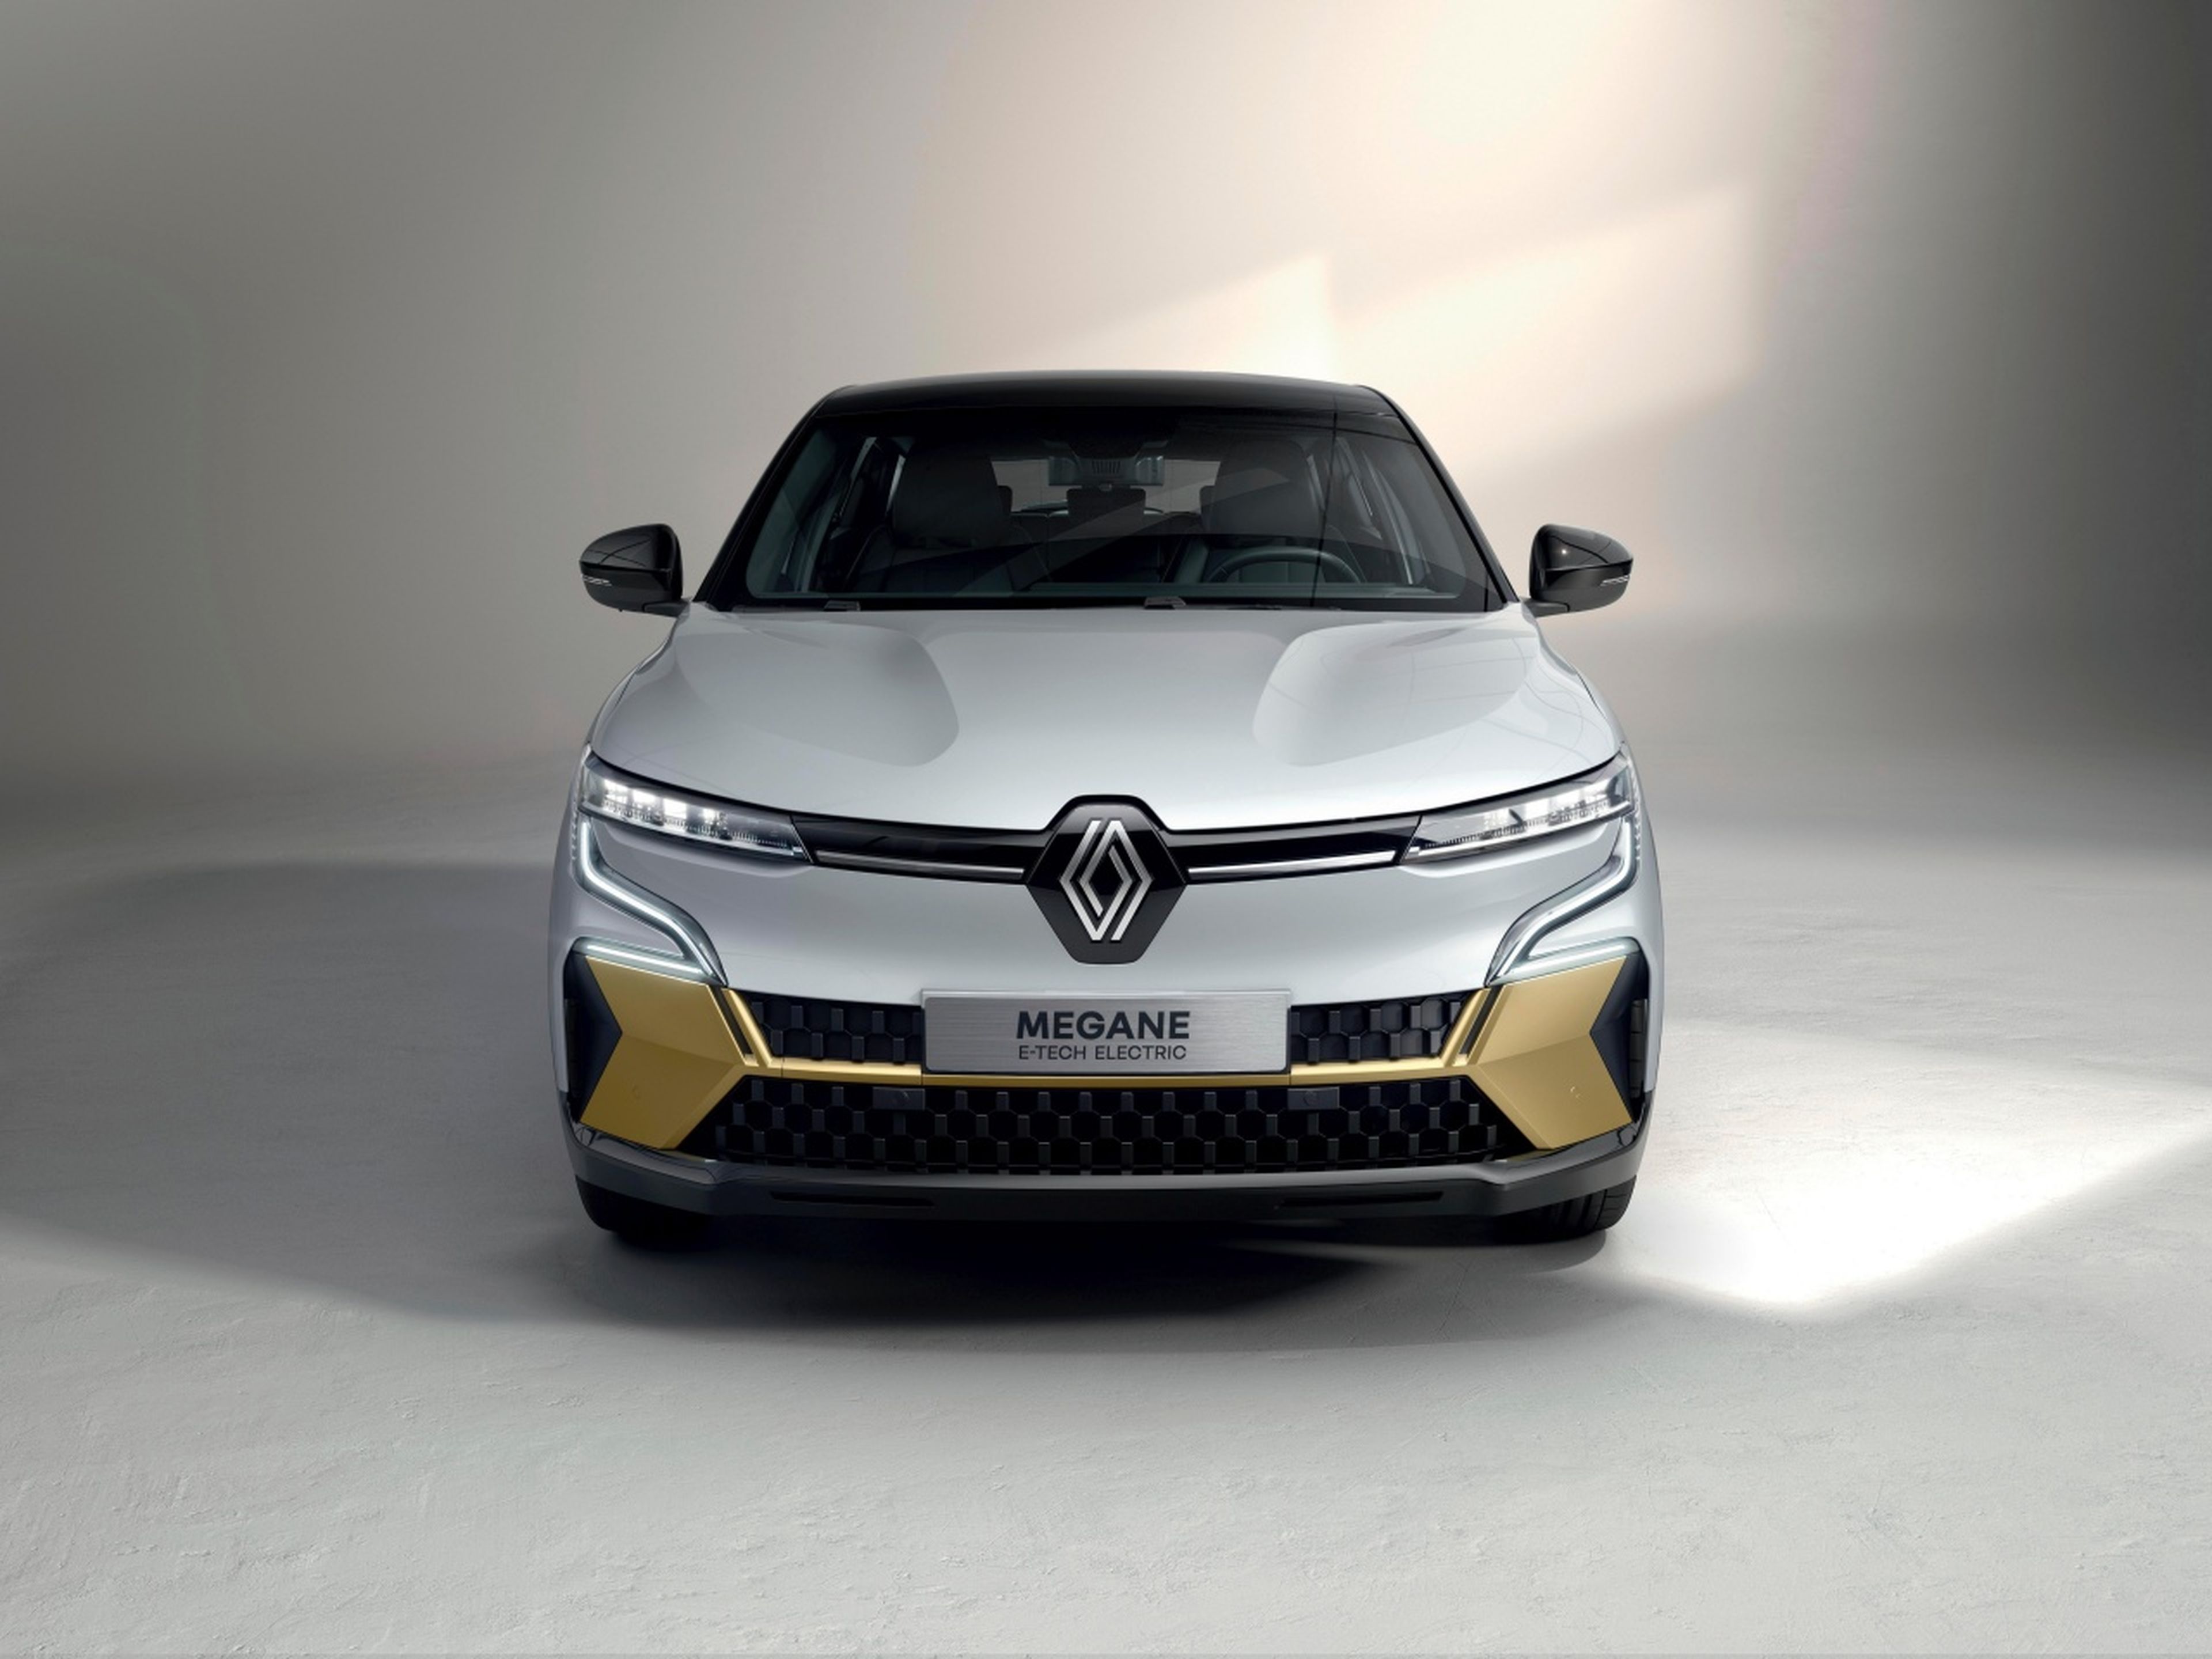 Renault Mégane E-Tech frontal